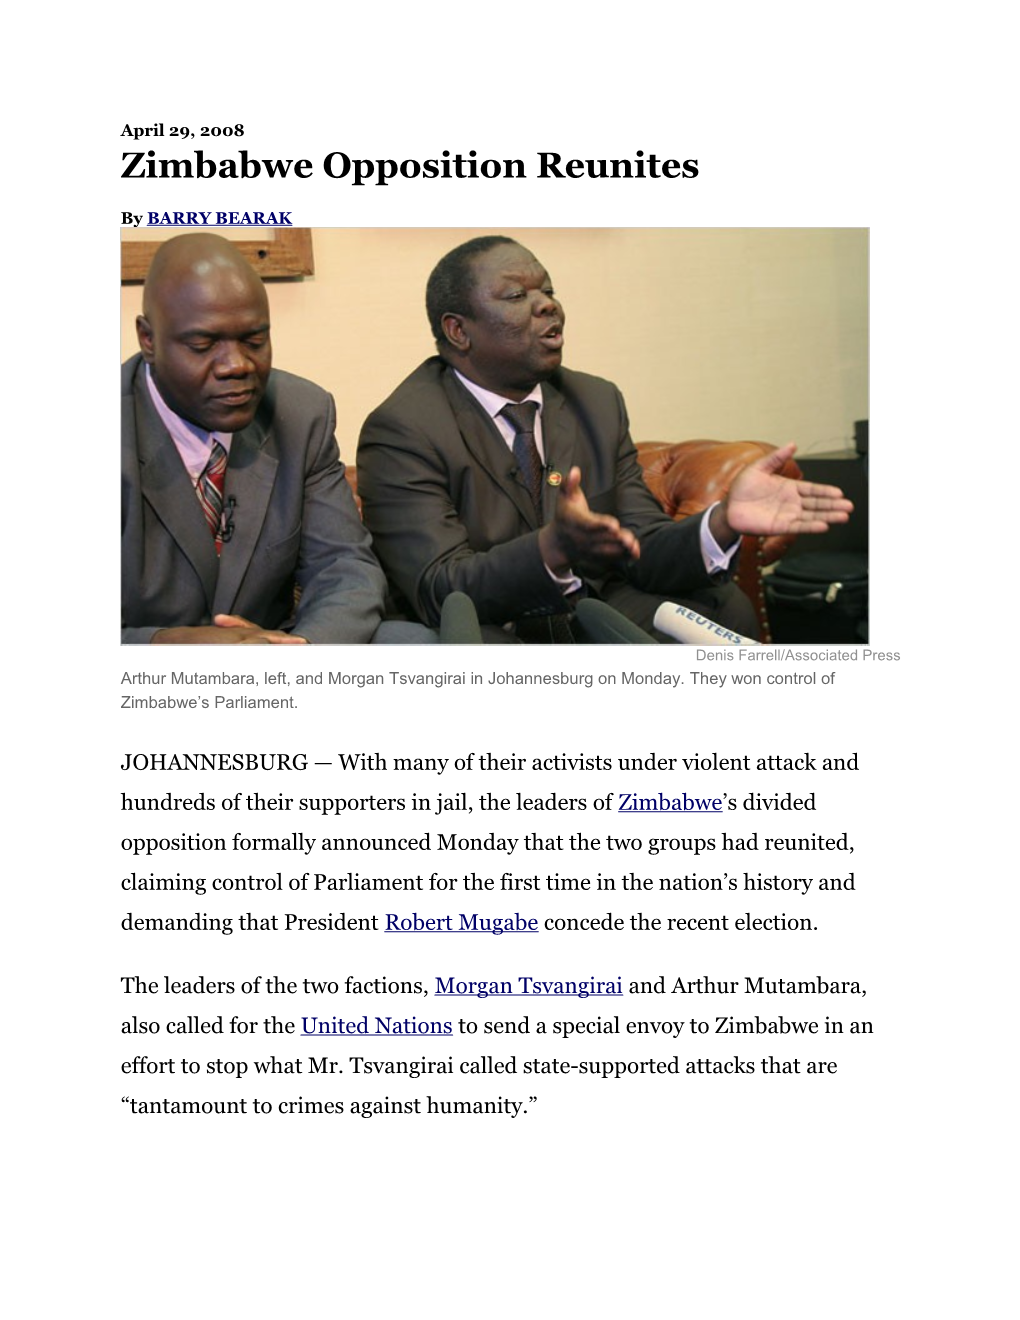 Zimbabwe Opposition Reunites